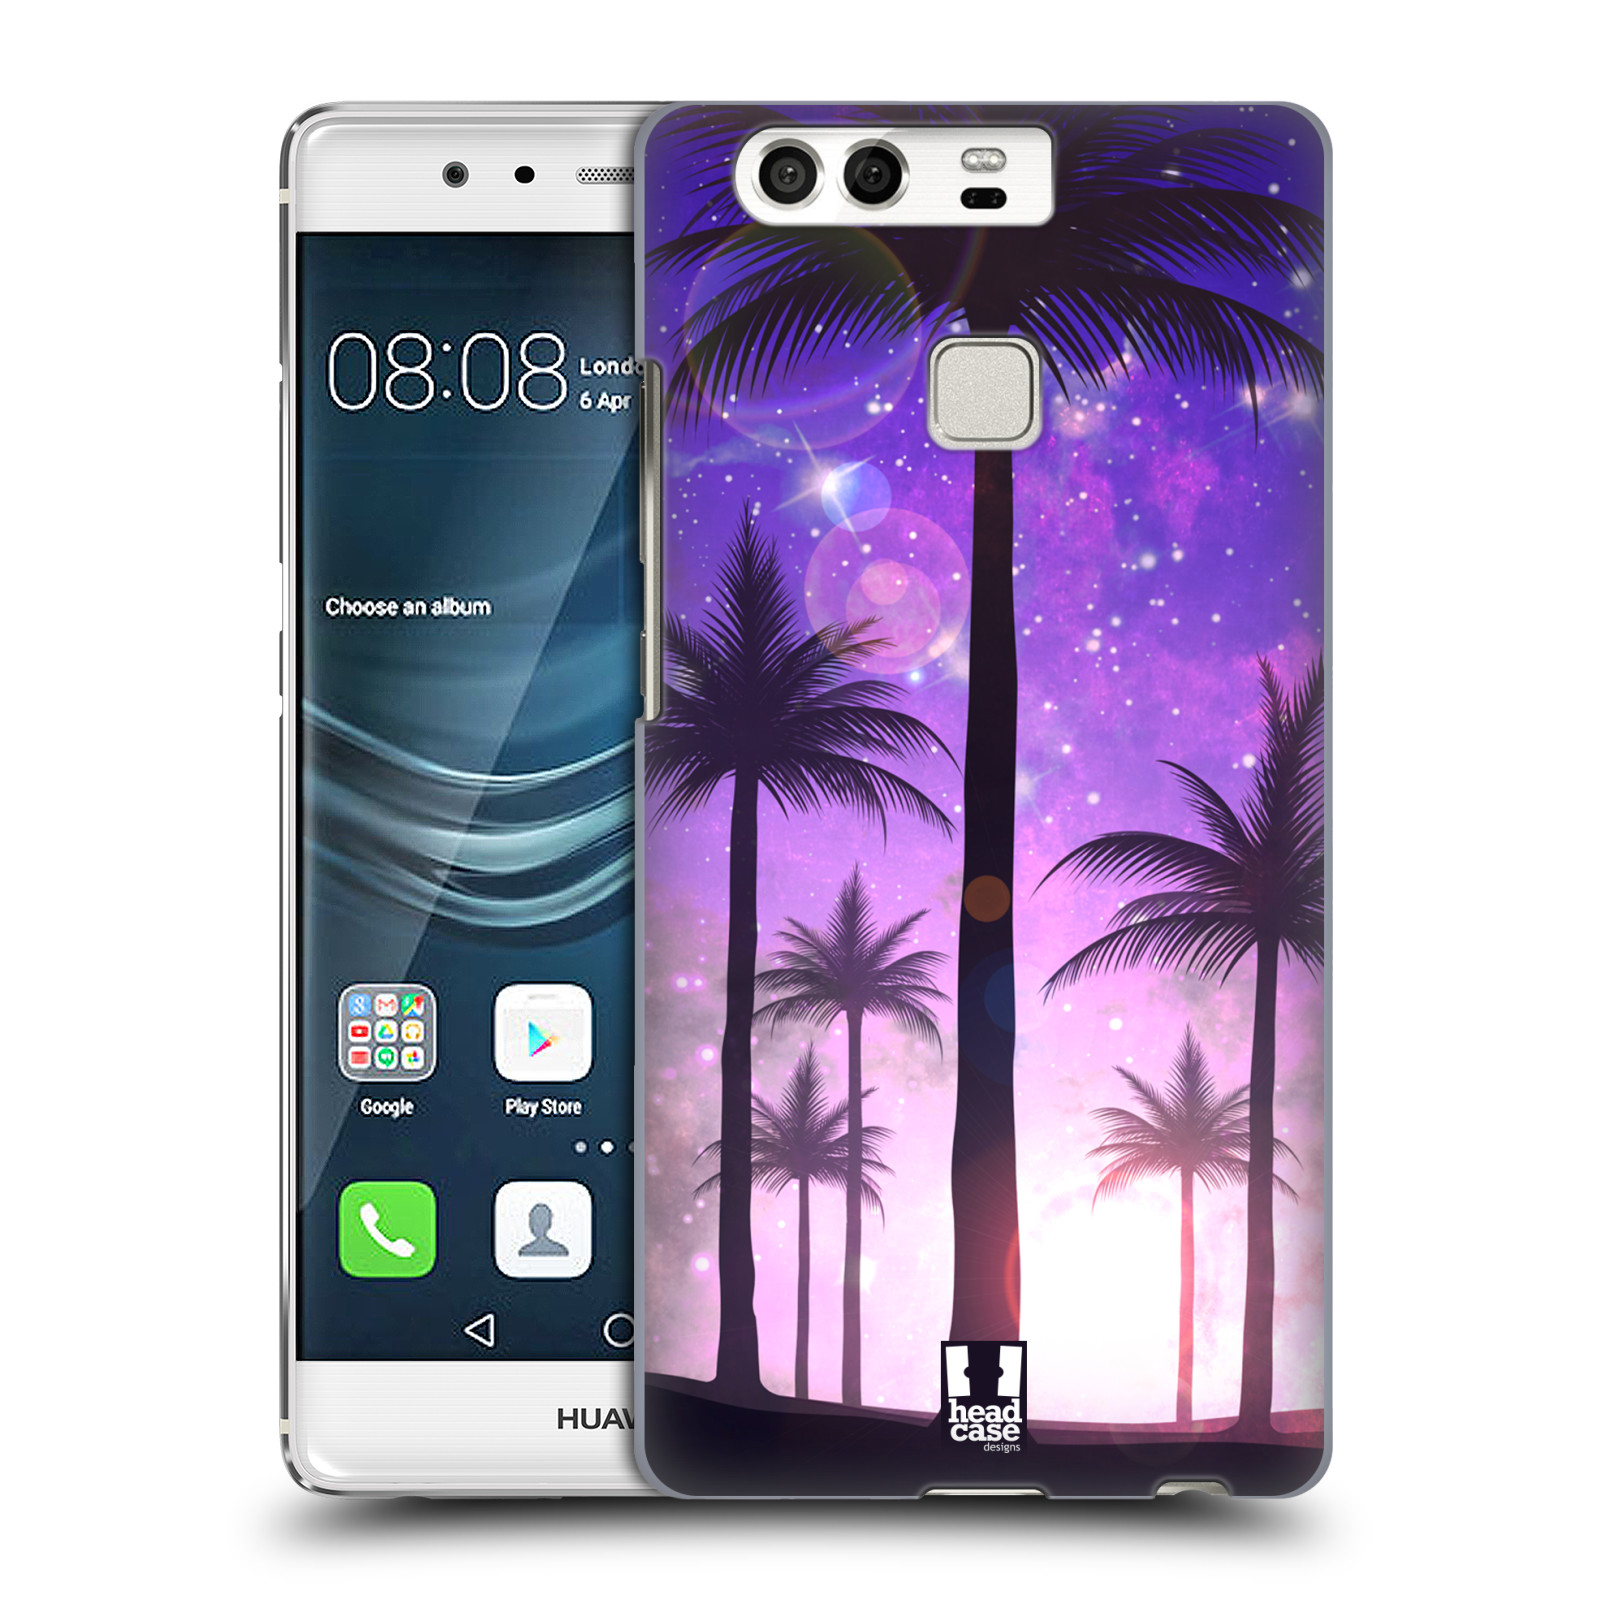 HEAD CASE plastový obal na mobil Huawei P9 / P9 DUAL SIM vzor Kreslený motiv silueta moře a palmy FIALOVÁ